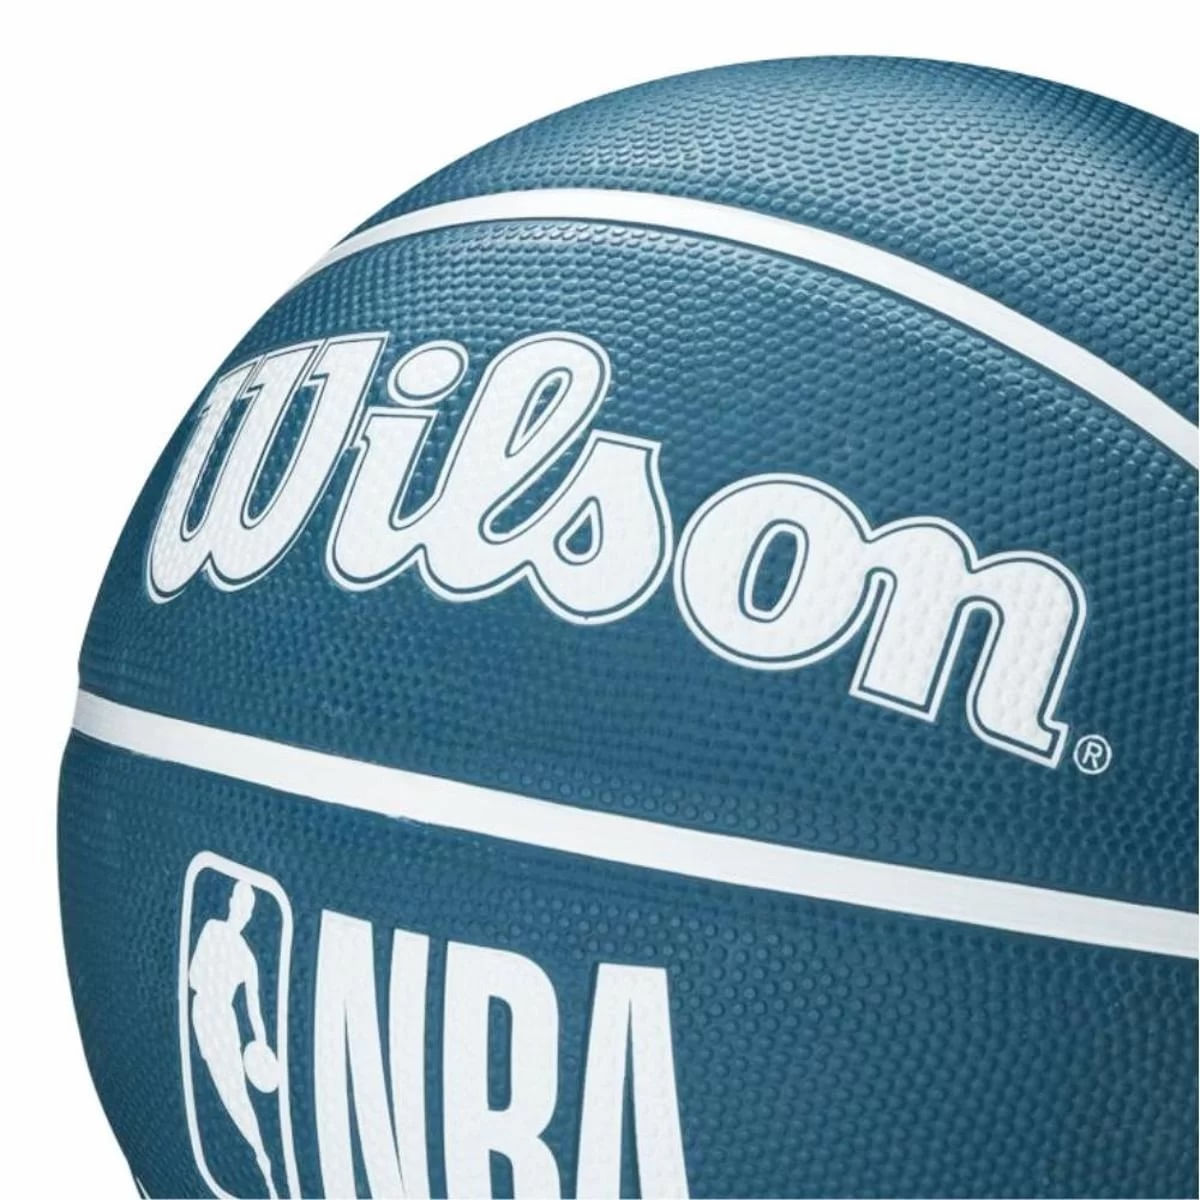 Bola de Basquete Wilson NBA DRV #6